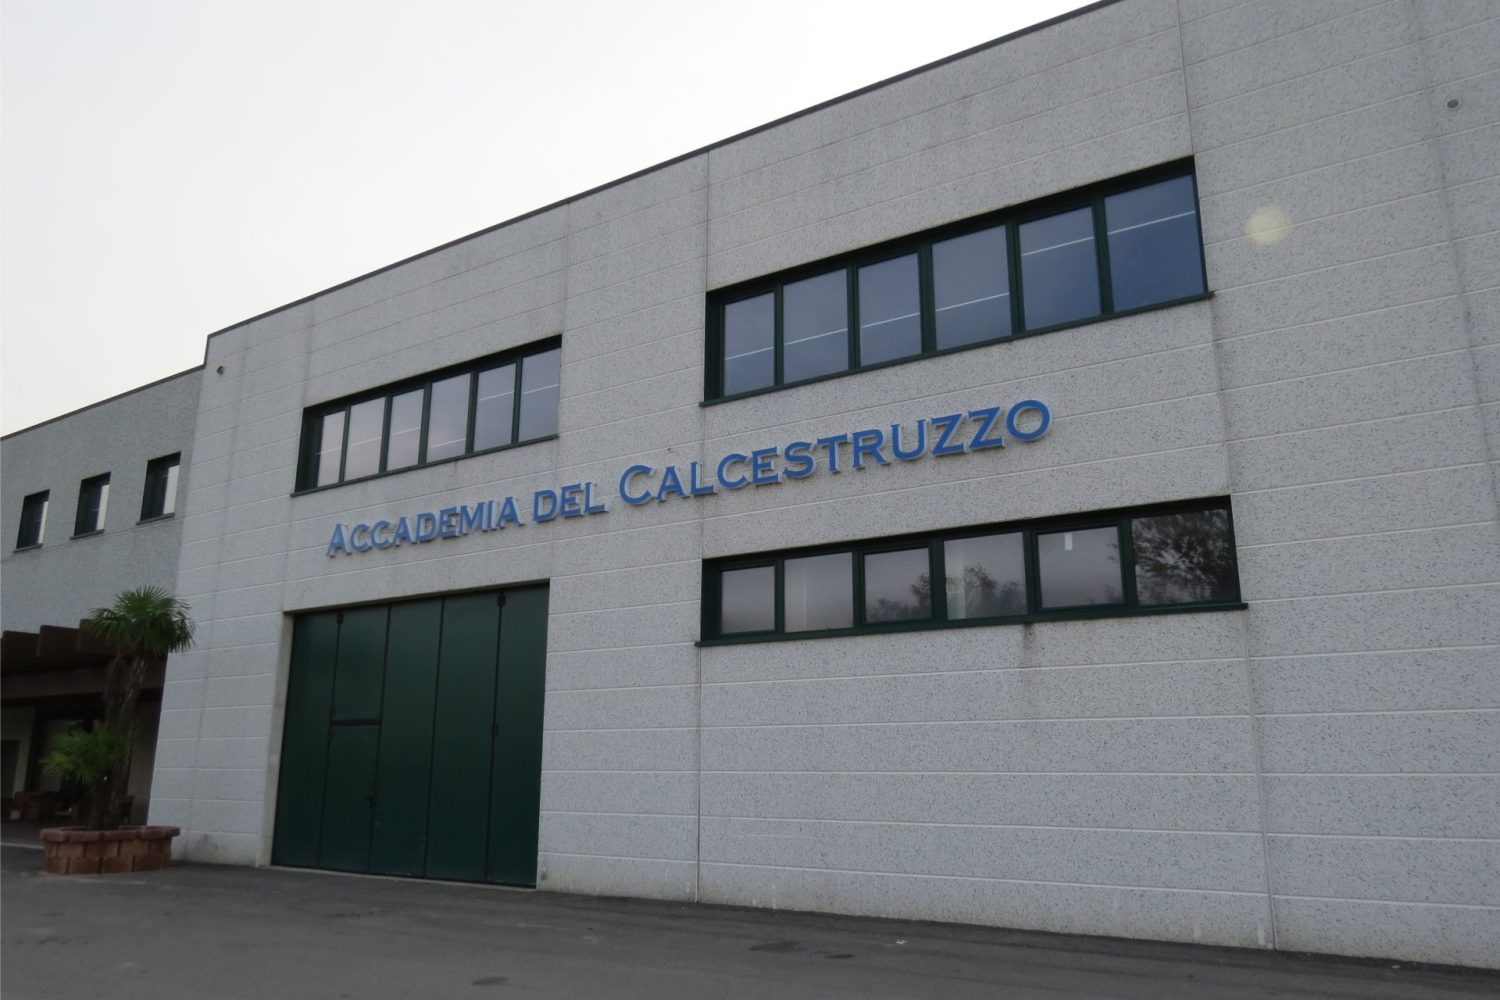 L'Accademia del Calcestruzzo di Renate (Monza Brianza)